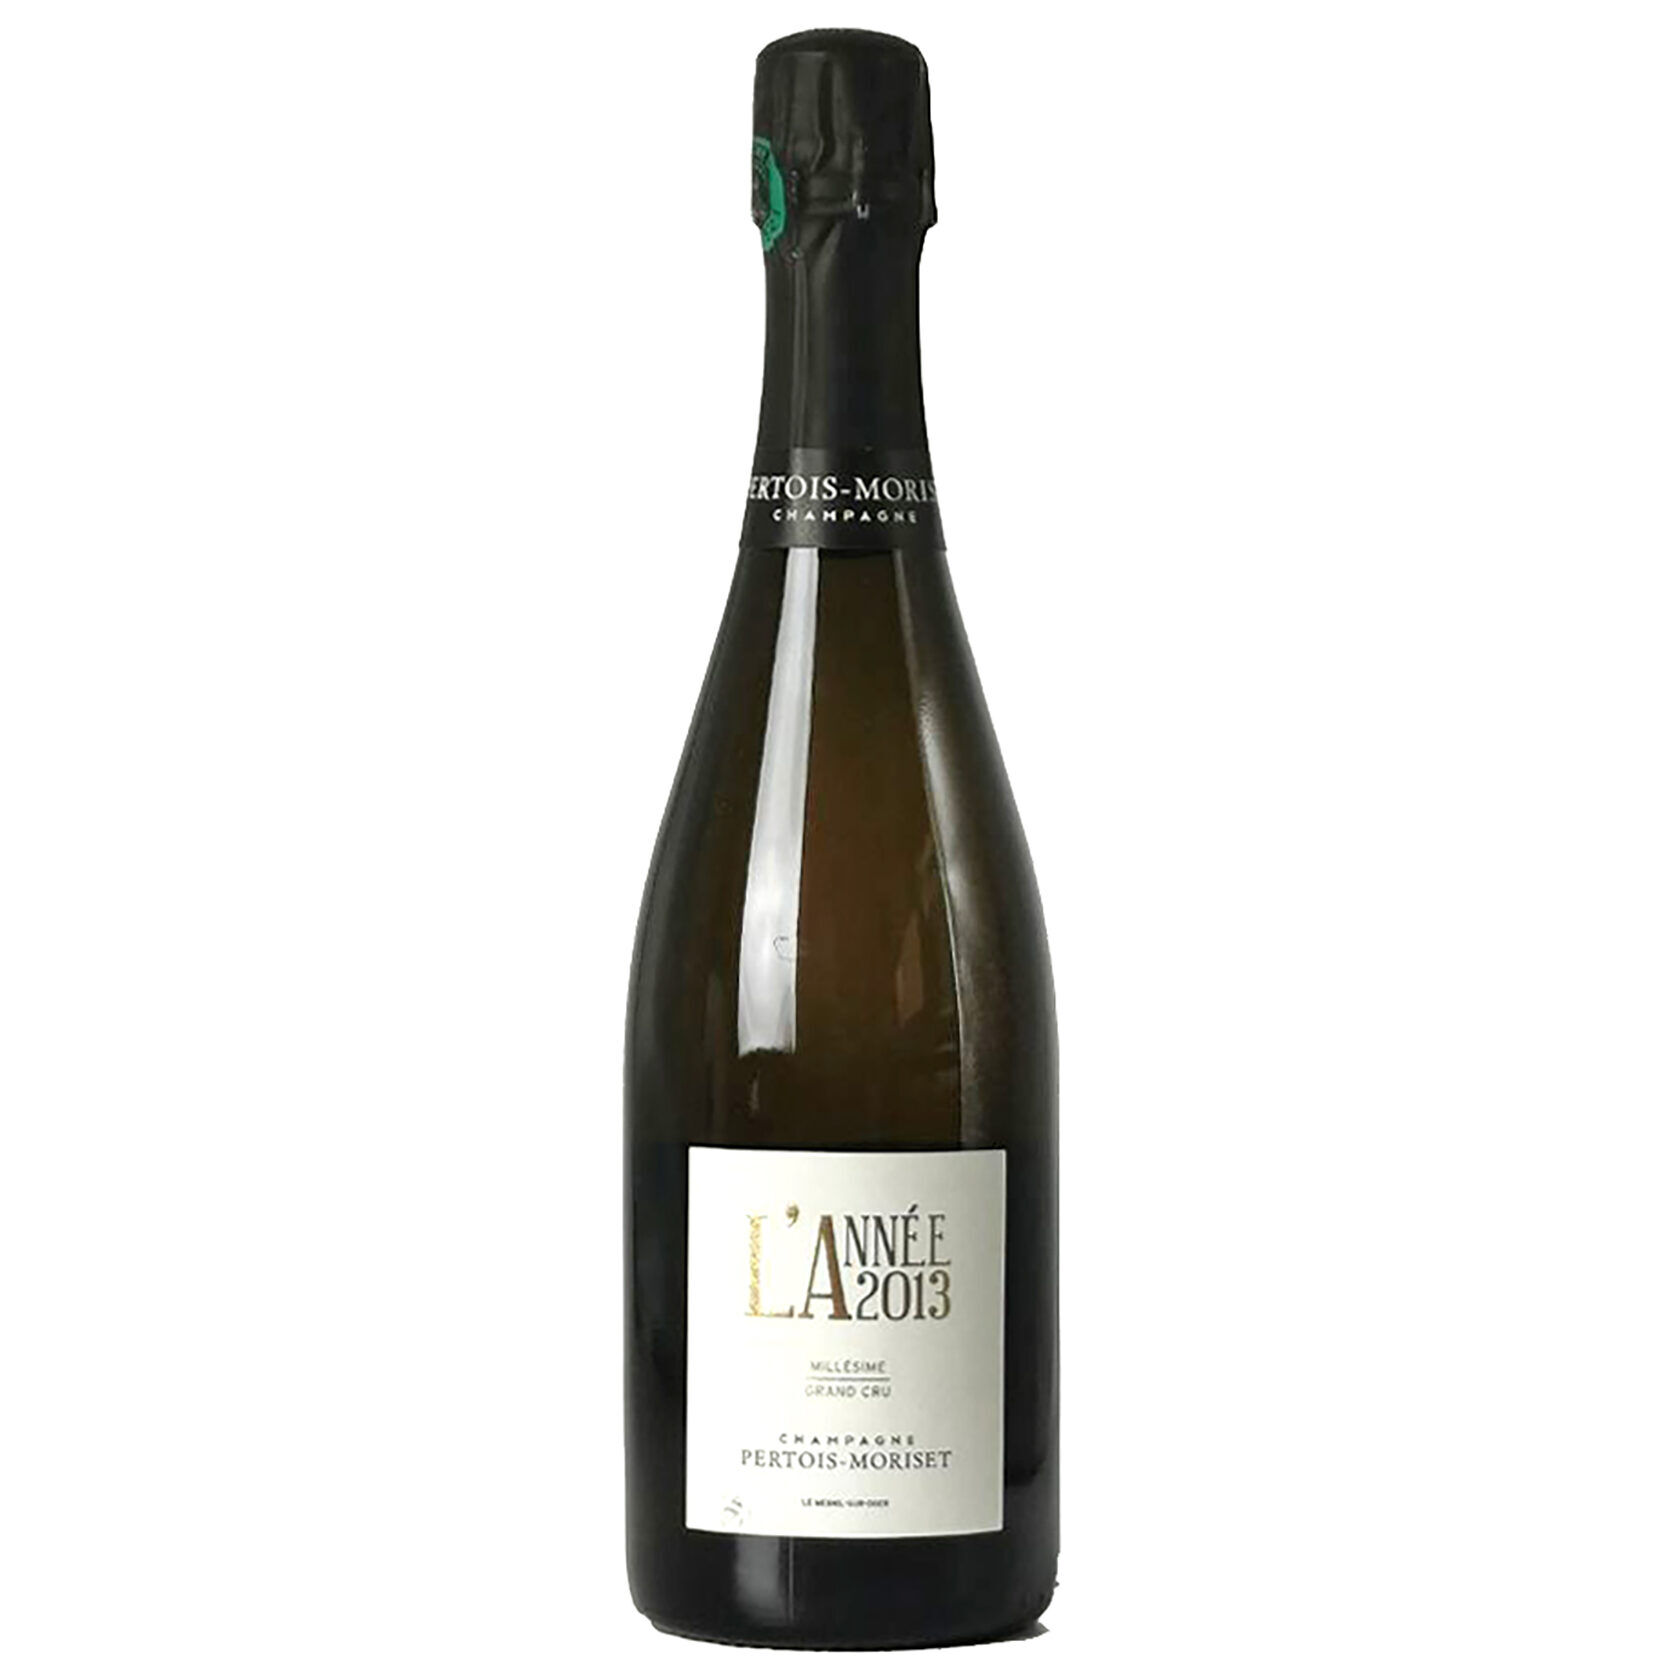 Laciviltadelbere Champagne Grand Cru Millesimato Extra Brut "L'Annèe" 2013 Pertois Moriset